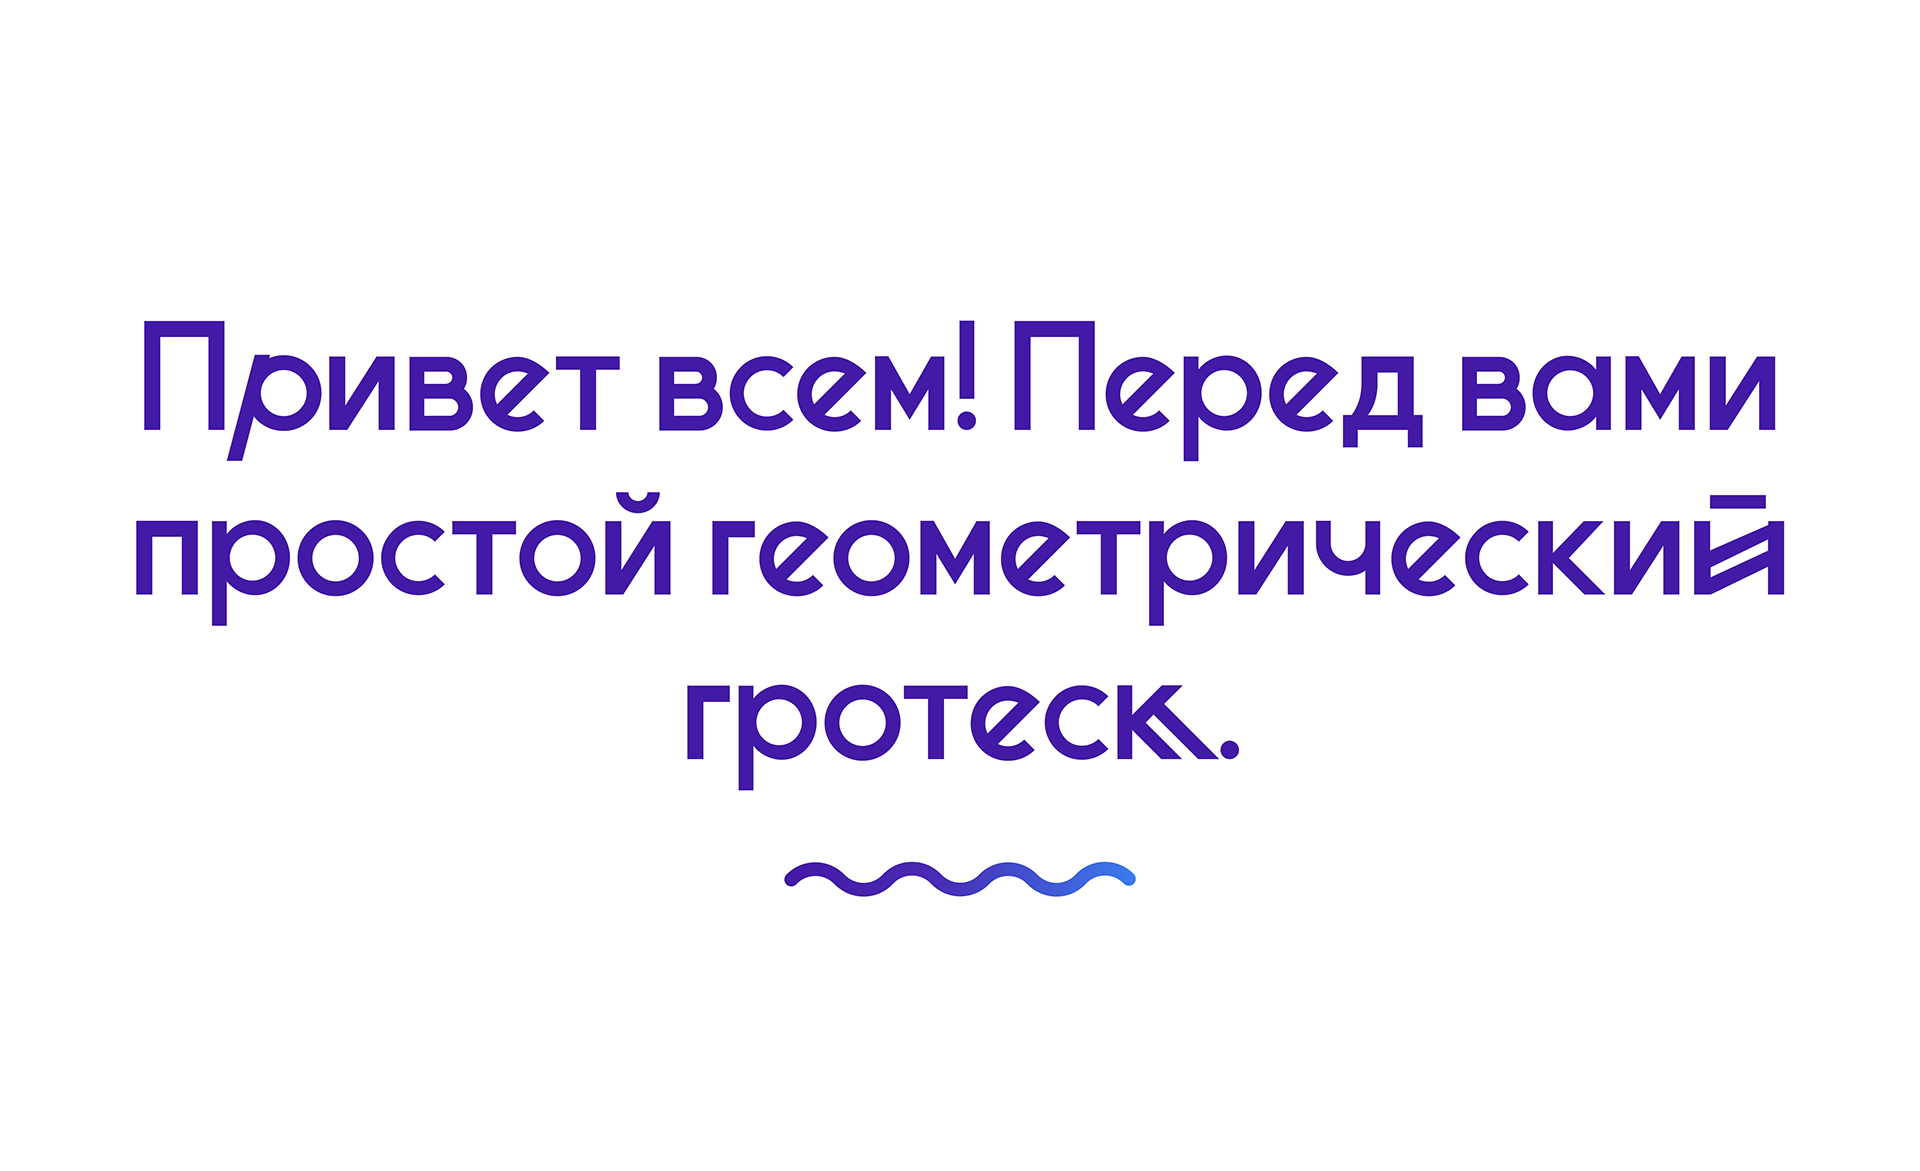 Пример шрифта Minsk Accent